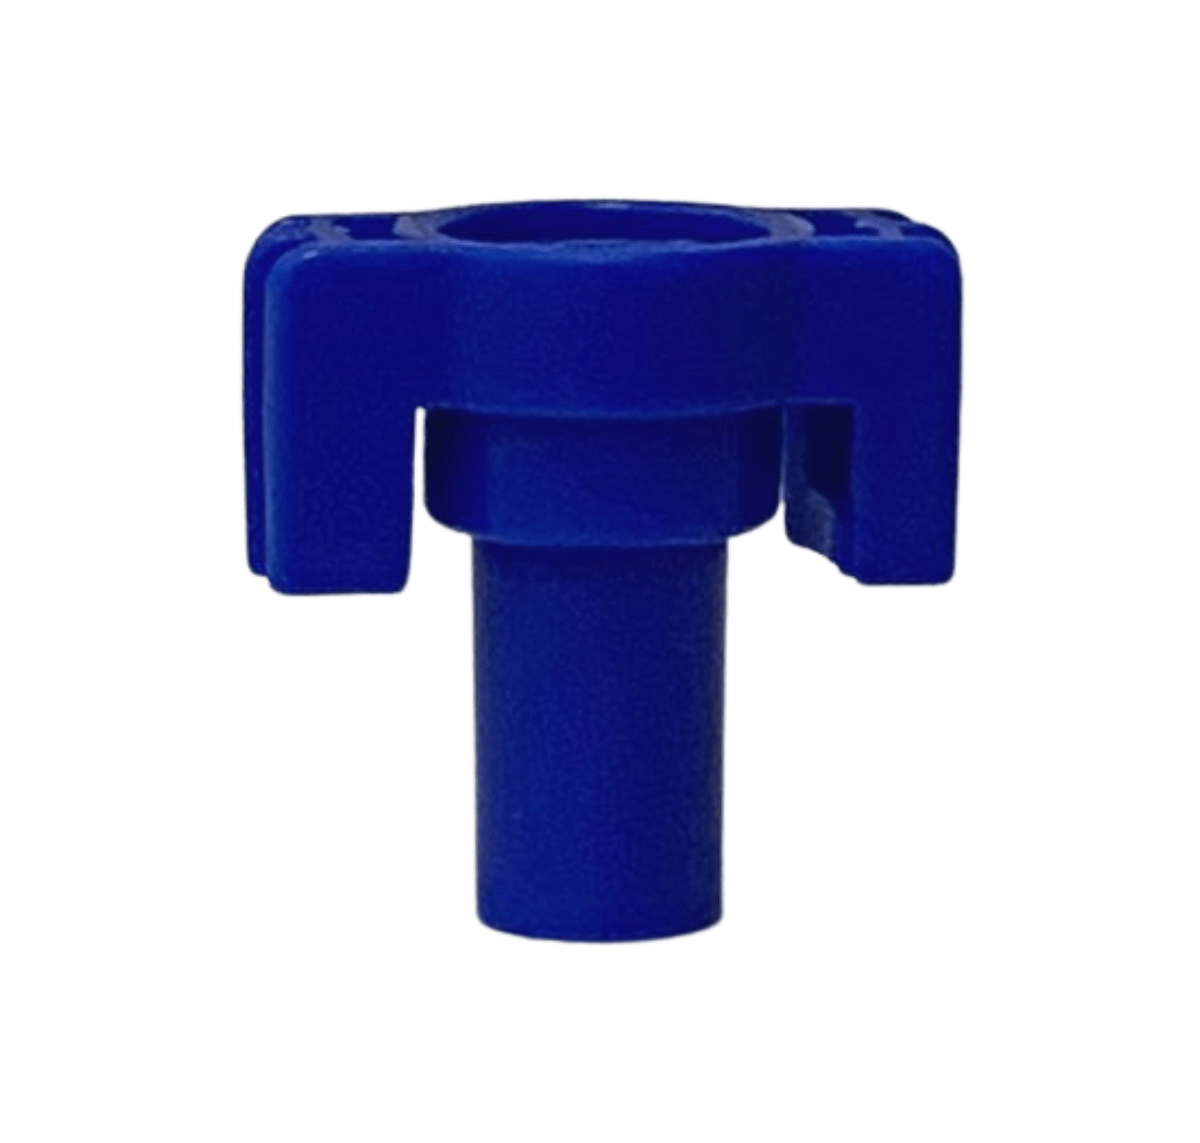 Bocal Dianteiro Azul 3.5 para Aspersor IM35 Para Irrigação - Implebras